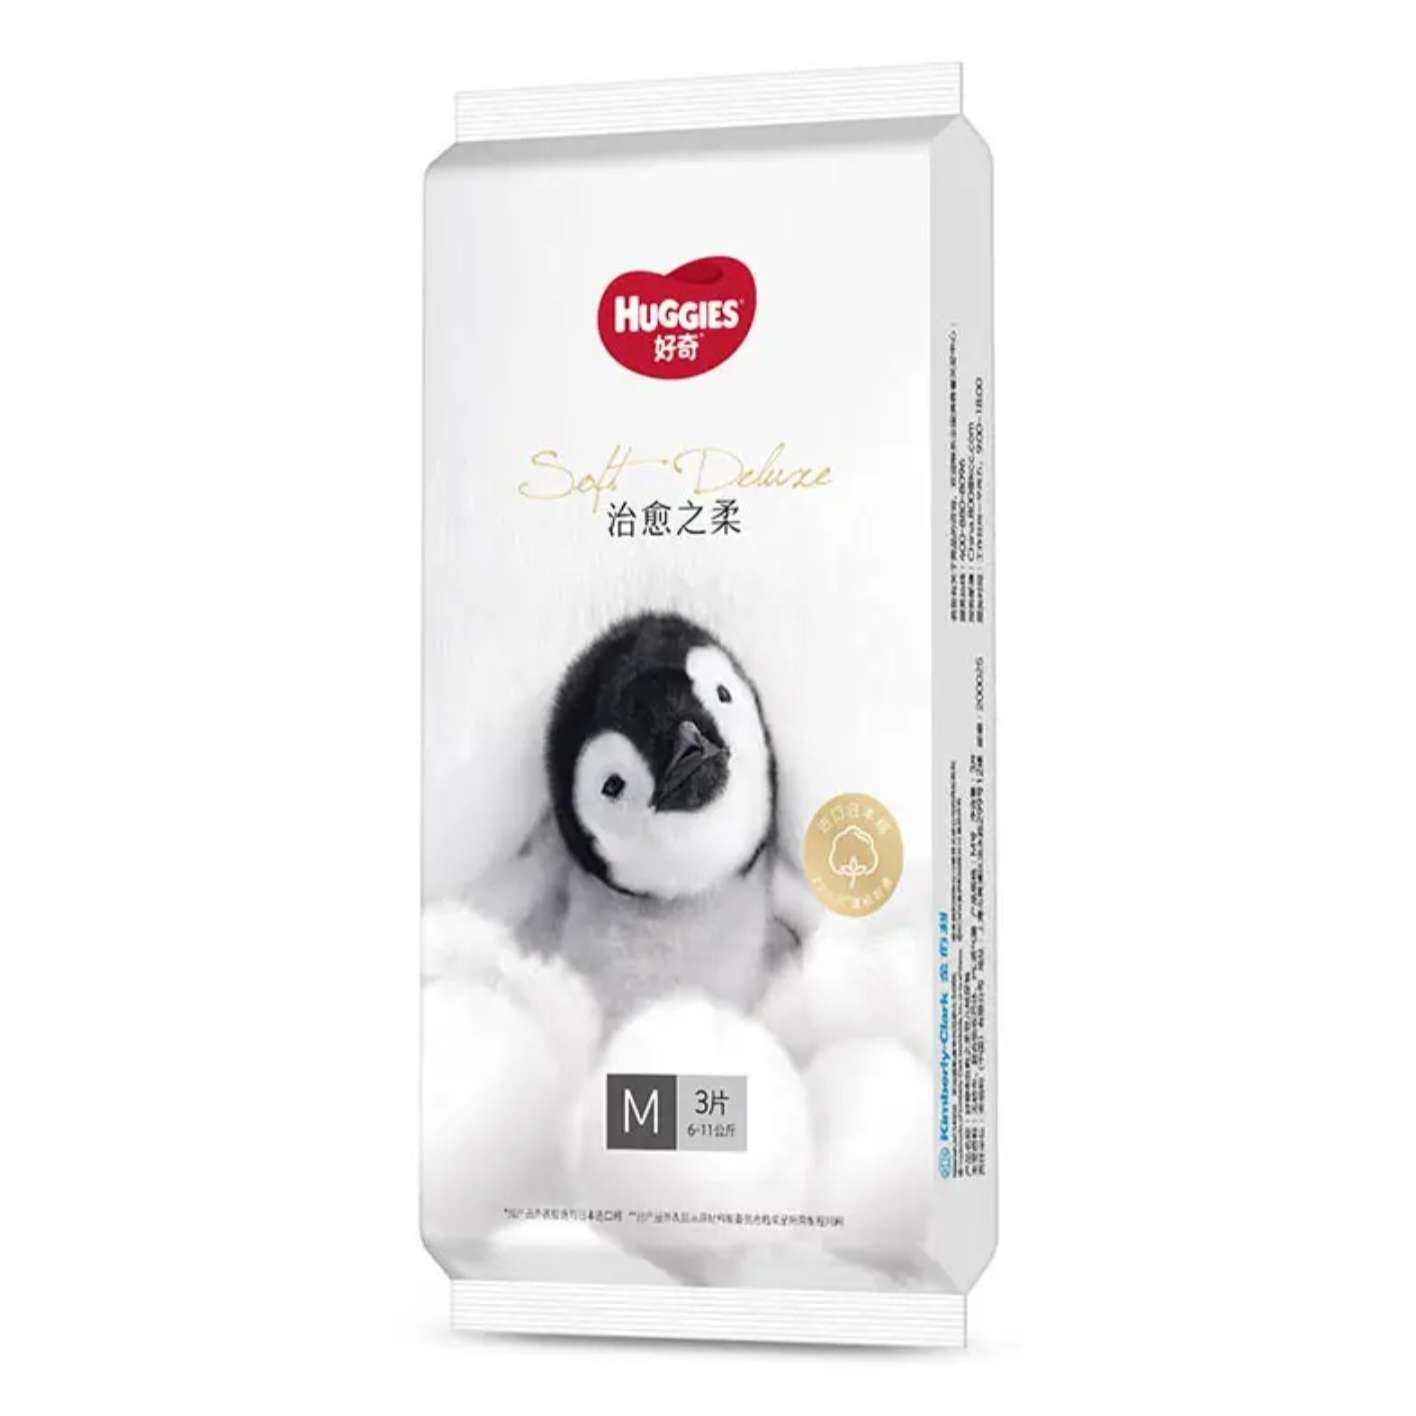 概率券、plus会员：好奇（Huggies）小企鹅治愈之柔纸尿裤 M3片(6-11kg) 39.9元